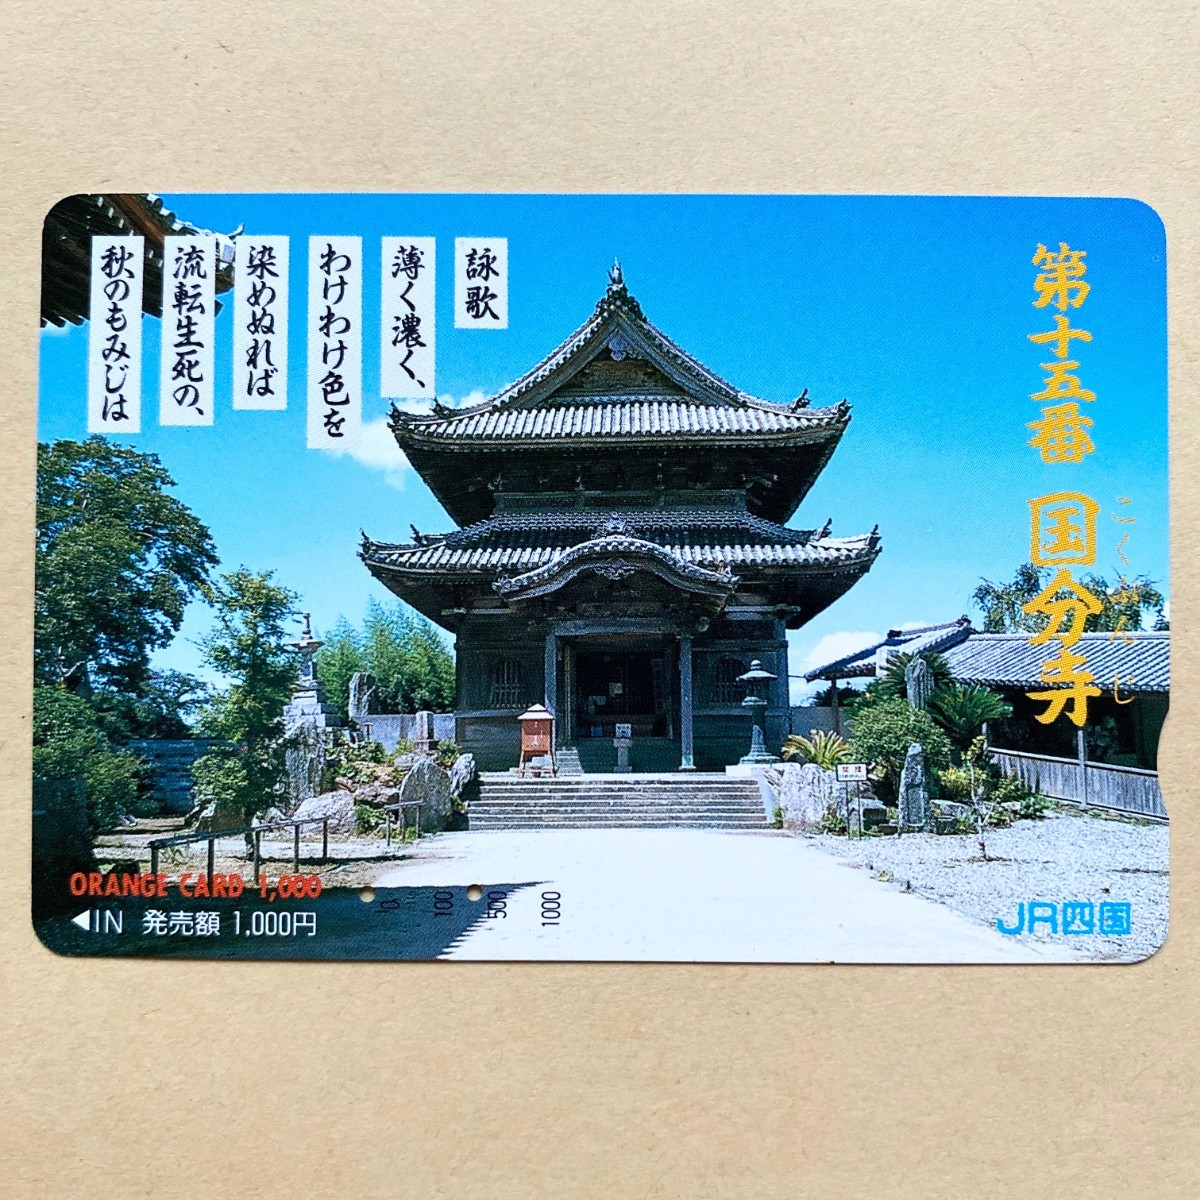 【使用済】 オレンジカード JR四国 第十五番 国分寺_画像1